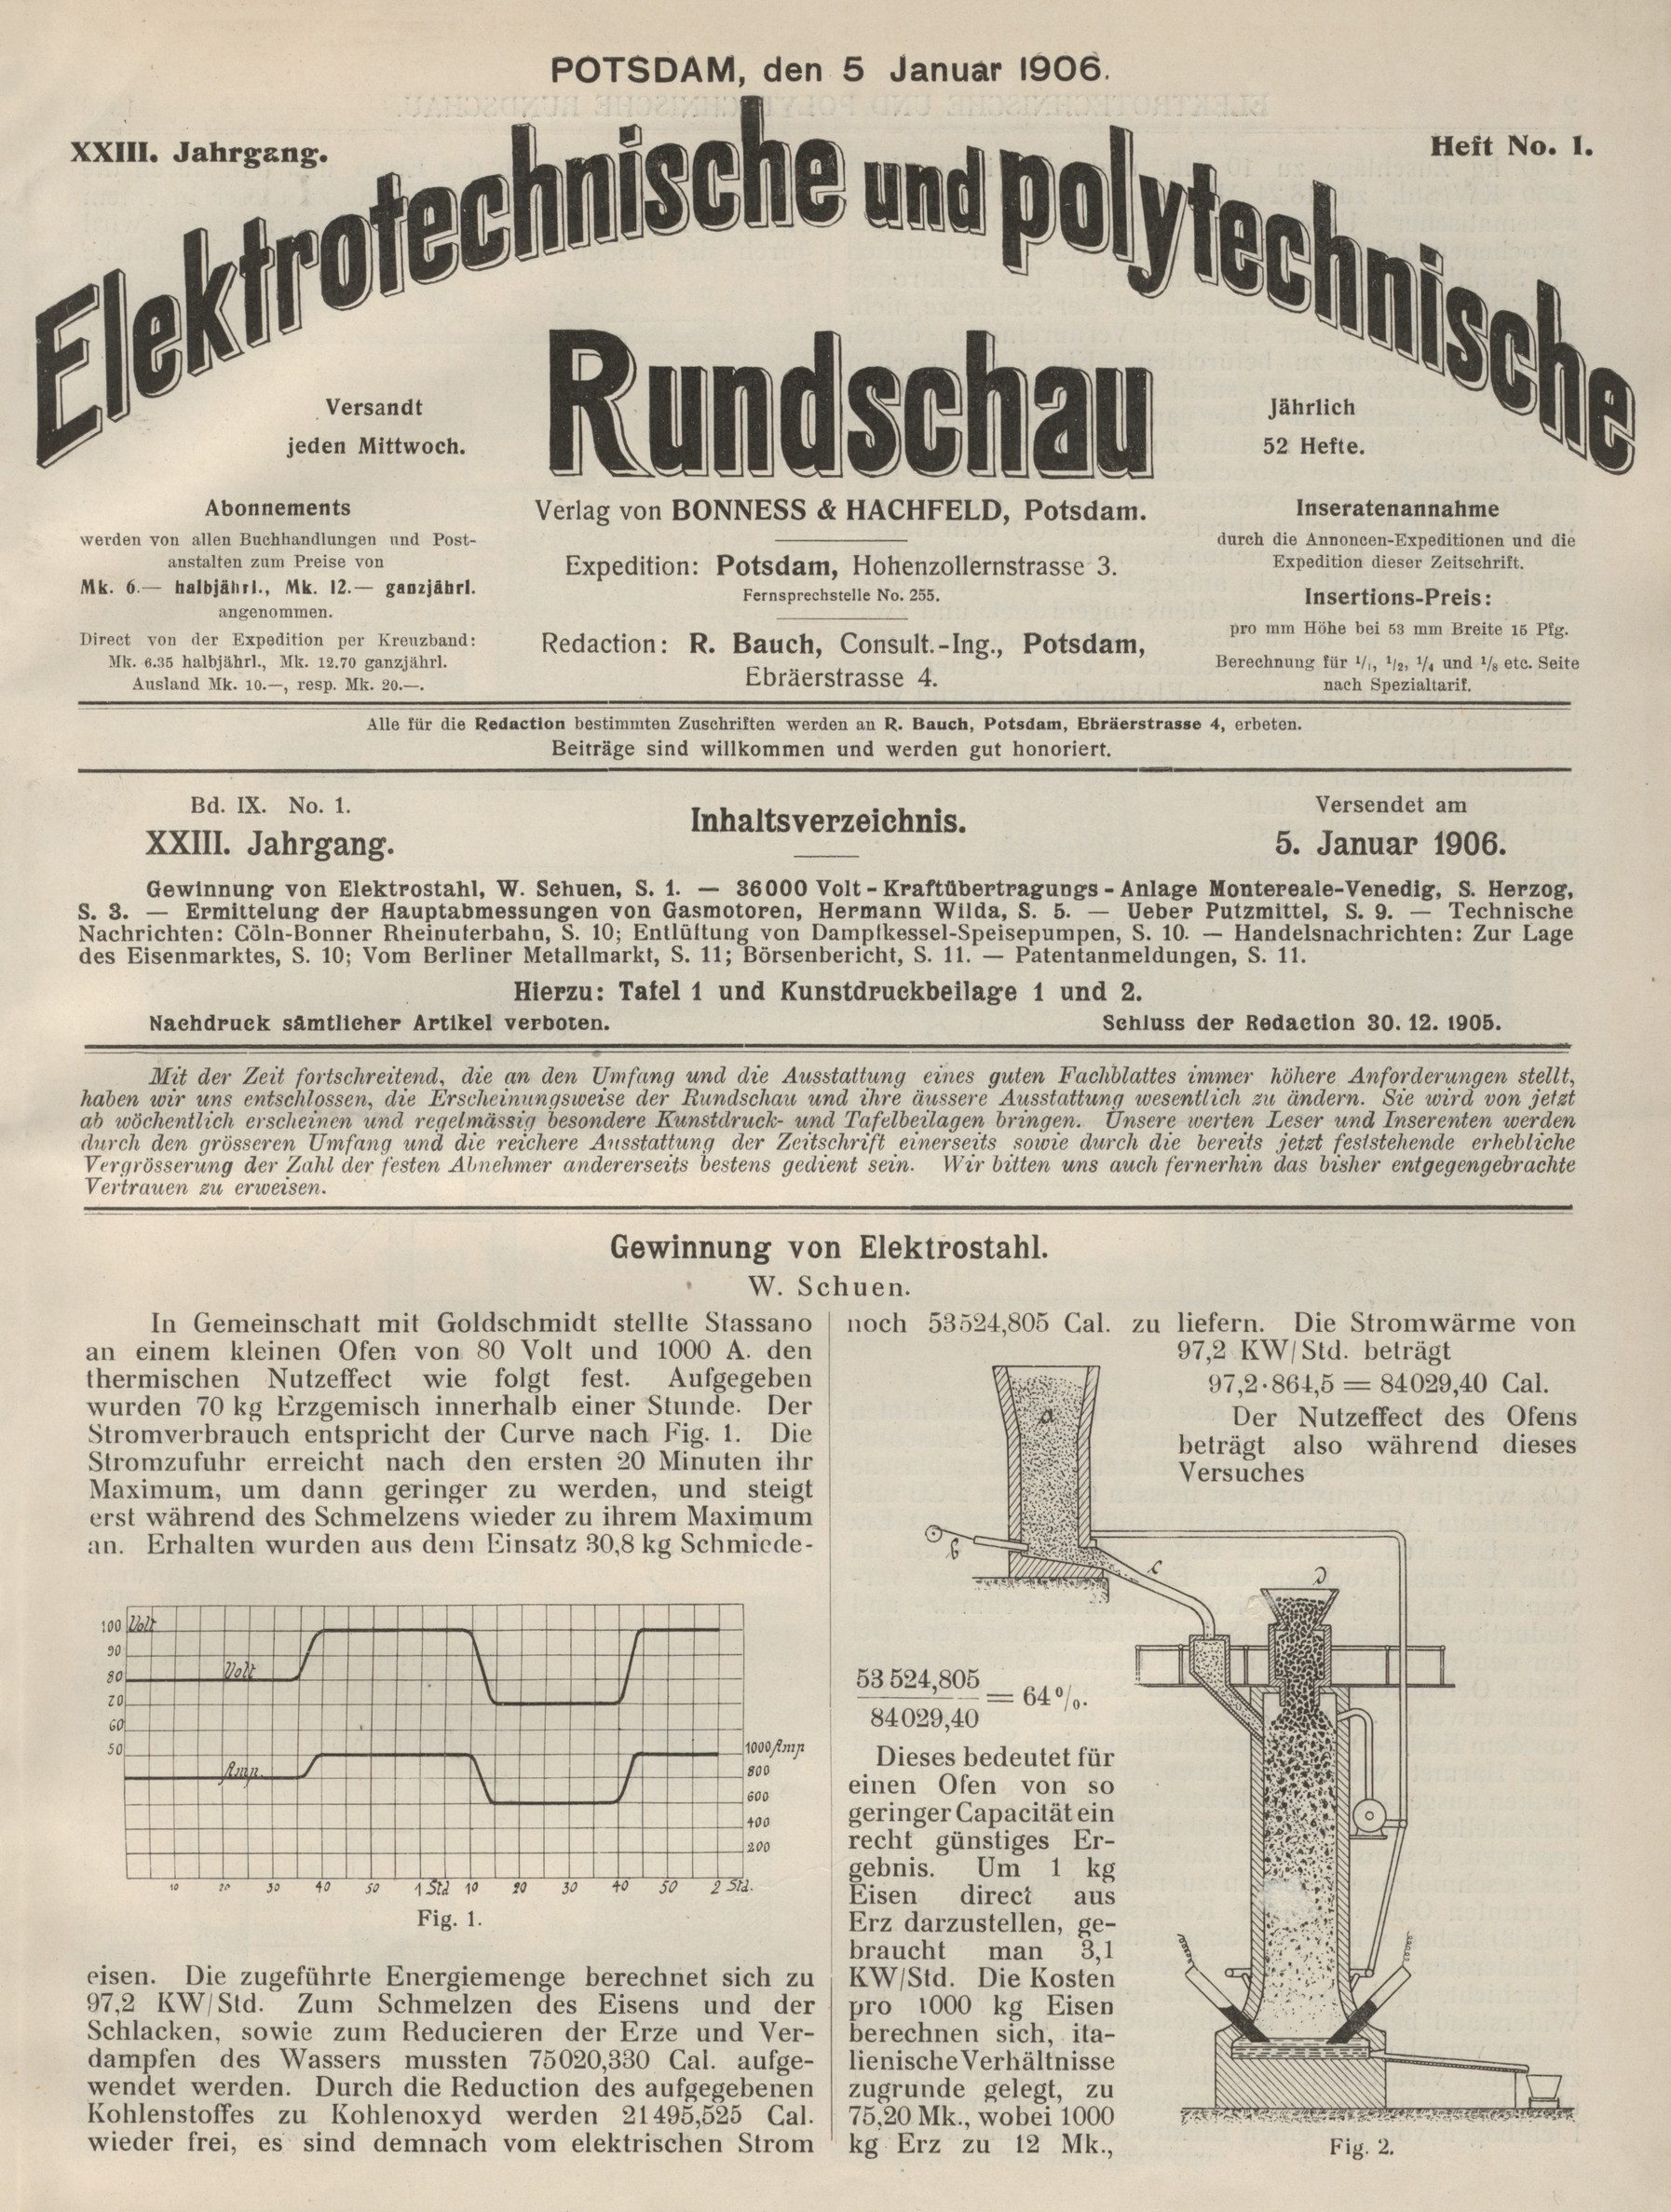 Elektrotechnische und polytechnische Rundschau, XXIII. Jahrgang, Heft No. 1